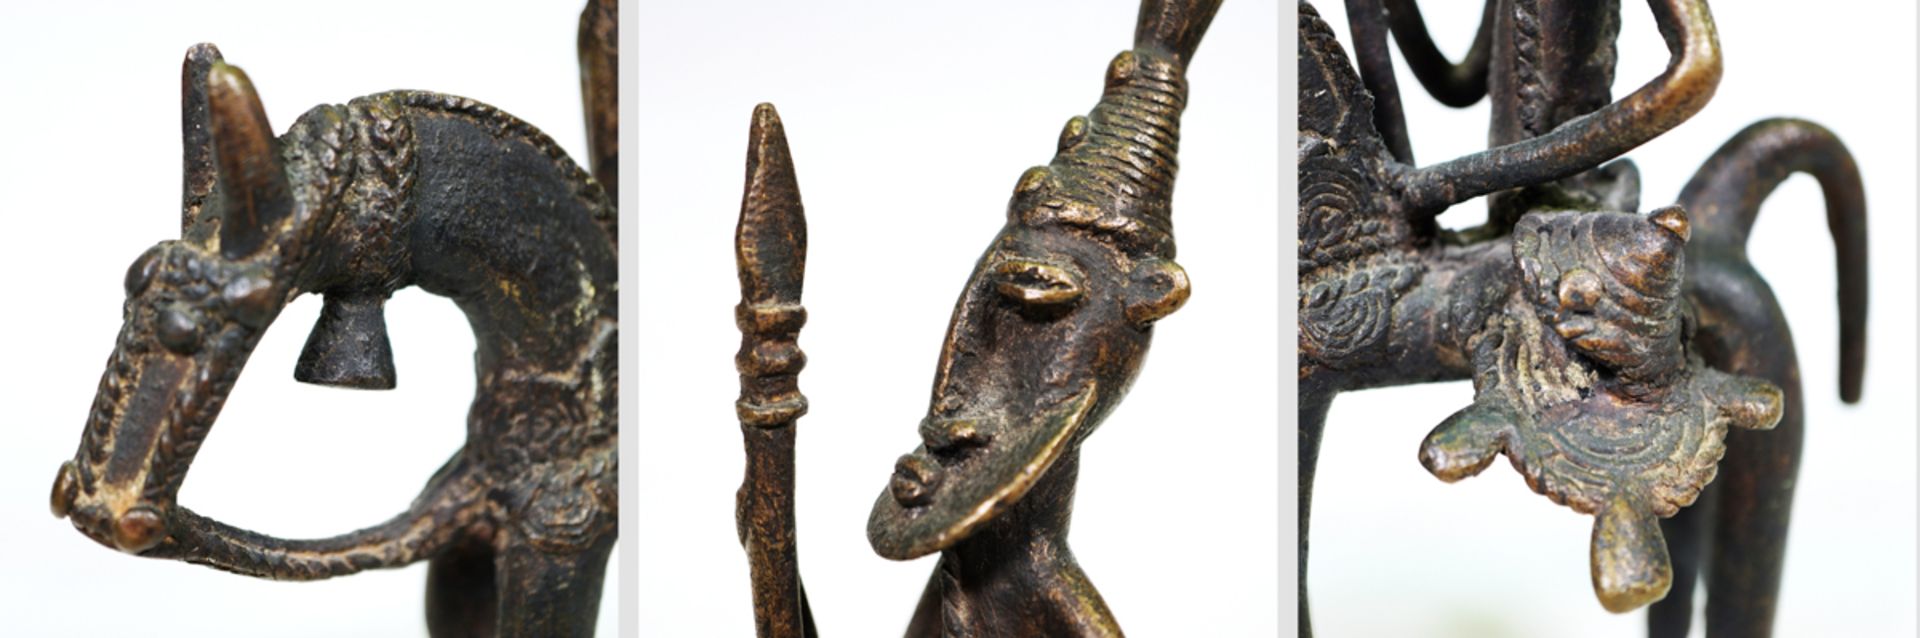 Reiterfigur, Volk der Dogon, Mali - Bild 3 aus 3